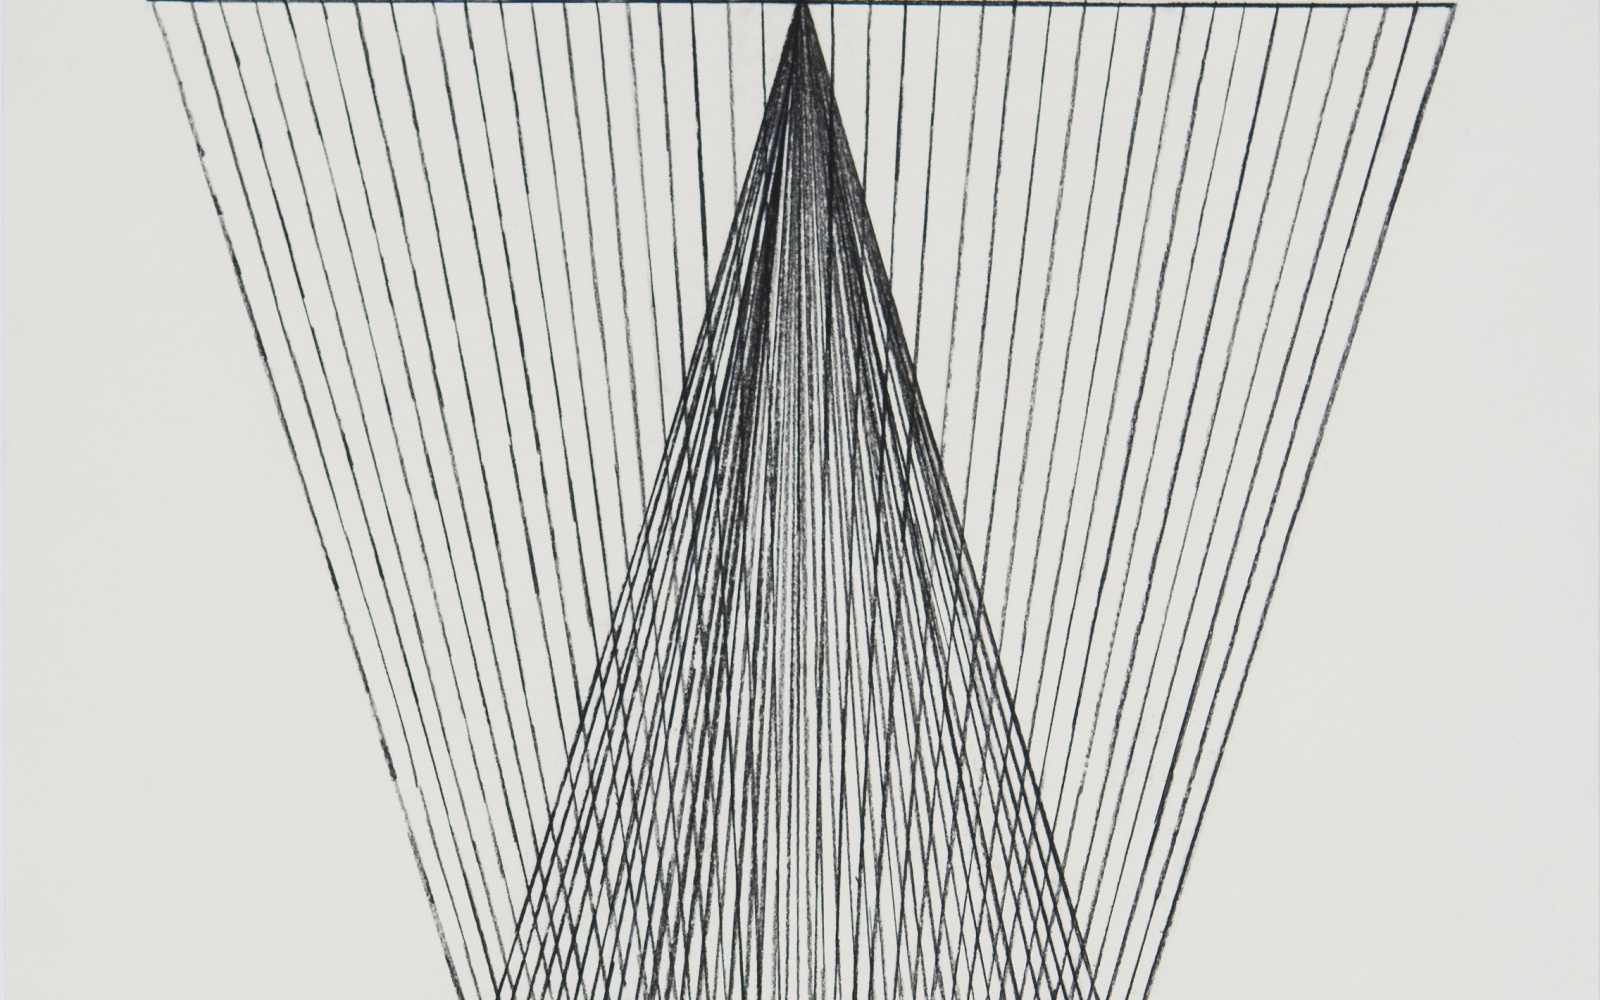 Das Werk besteht aus Zwei Dreiecken, die sich mit der Spitze an der größeren Länge des anderen Dreiecks treffen. Das Bild besteht aus Tusche mit Rohrfeder auf Papier.